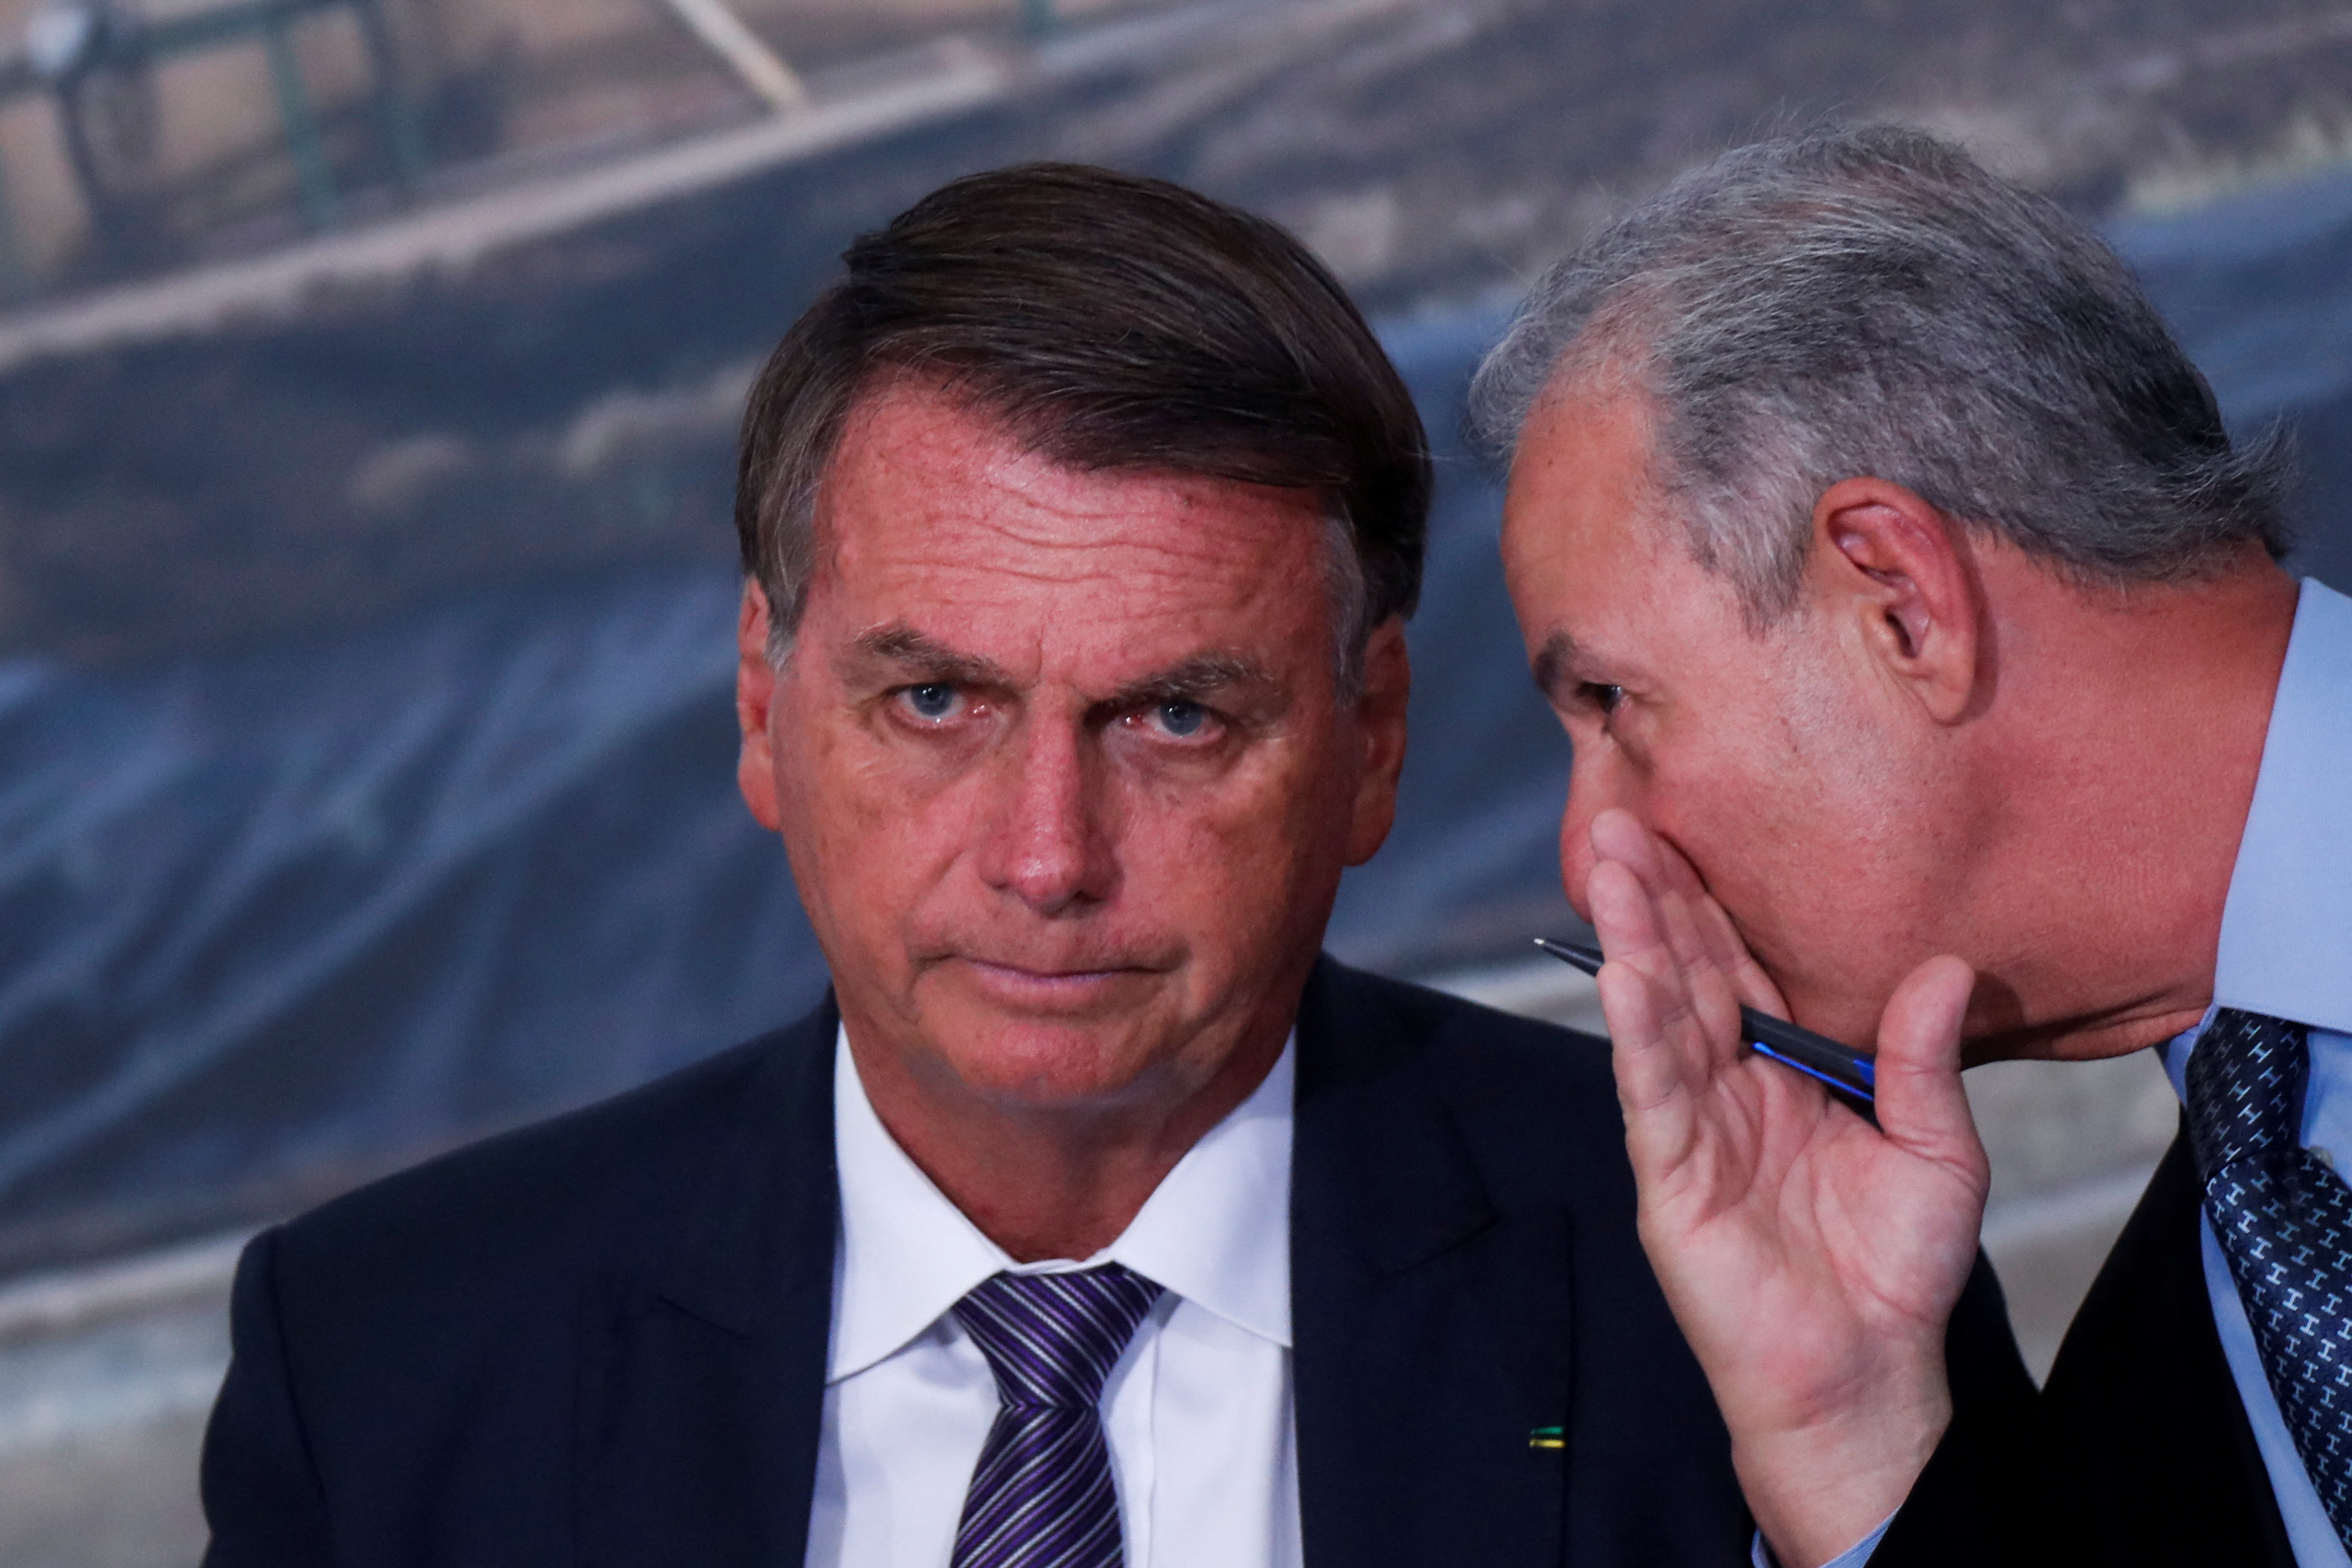 El ministro de Minas y Energía de Bolsonaro, Bento Albuquerque, ayudó al mandatario a ingresar las piezas sin declarar (REUTERS)